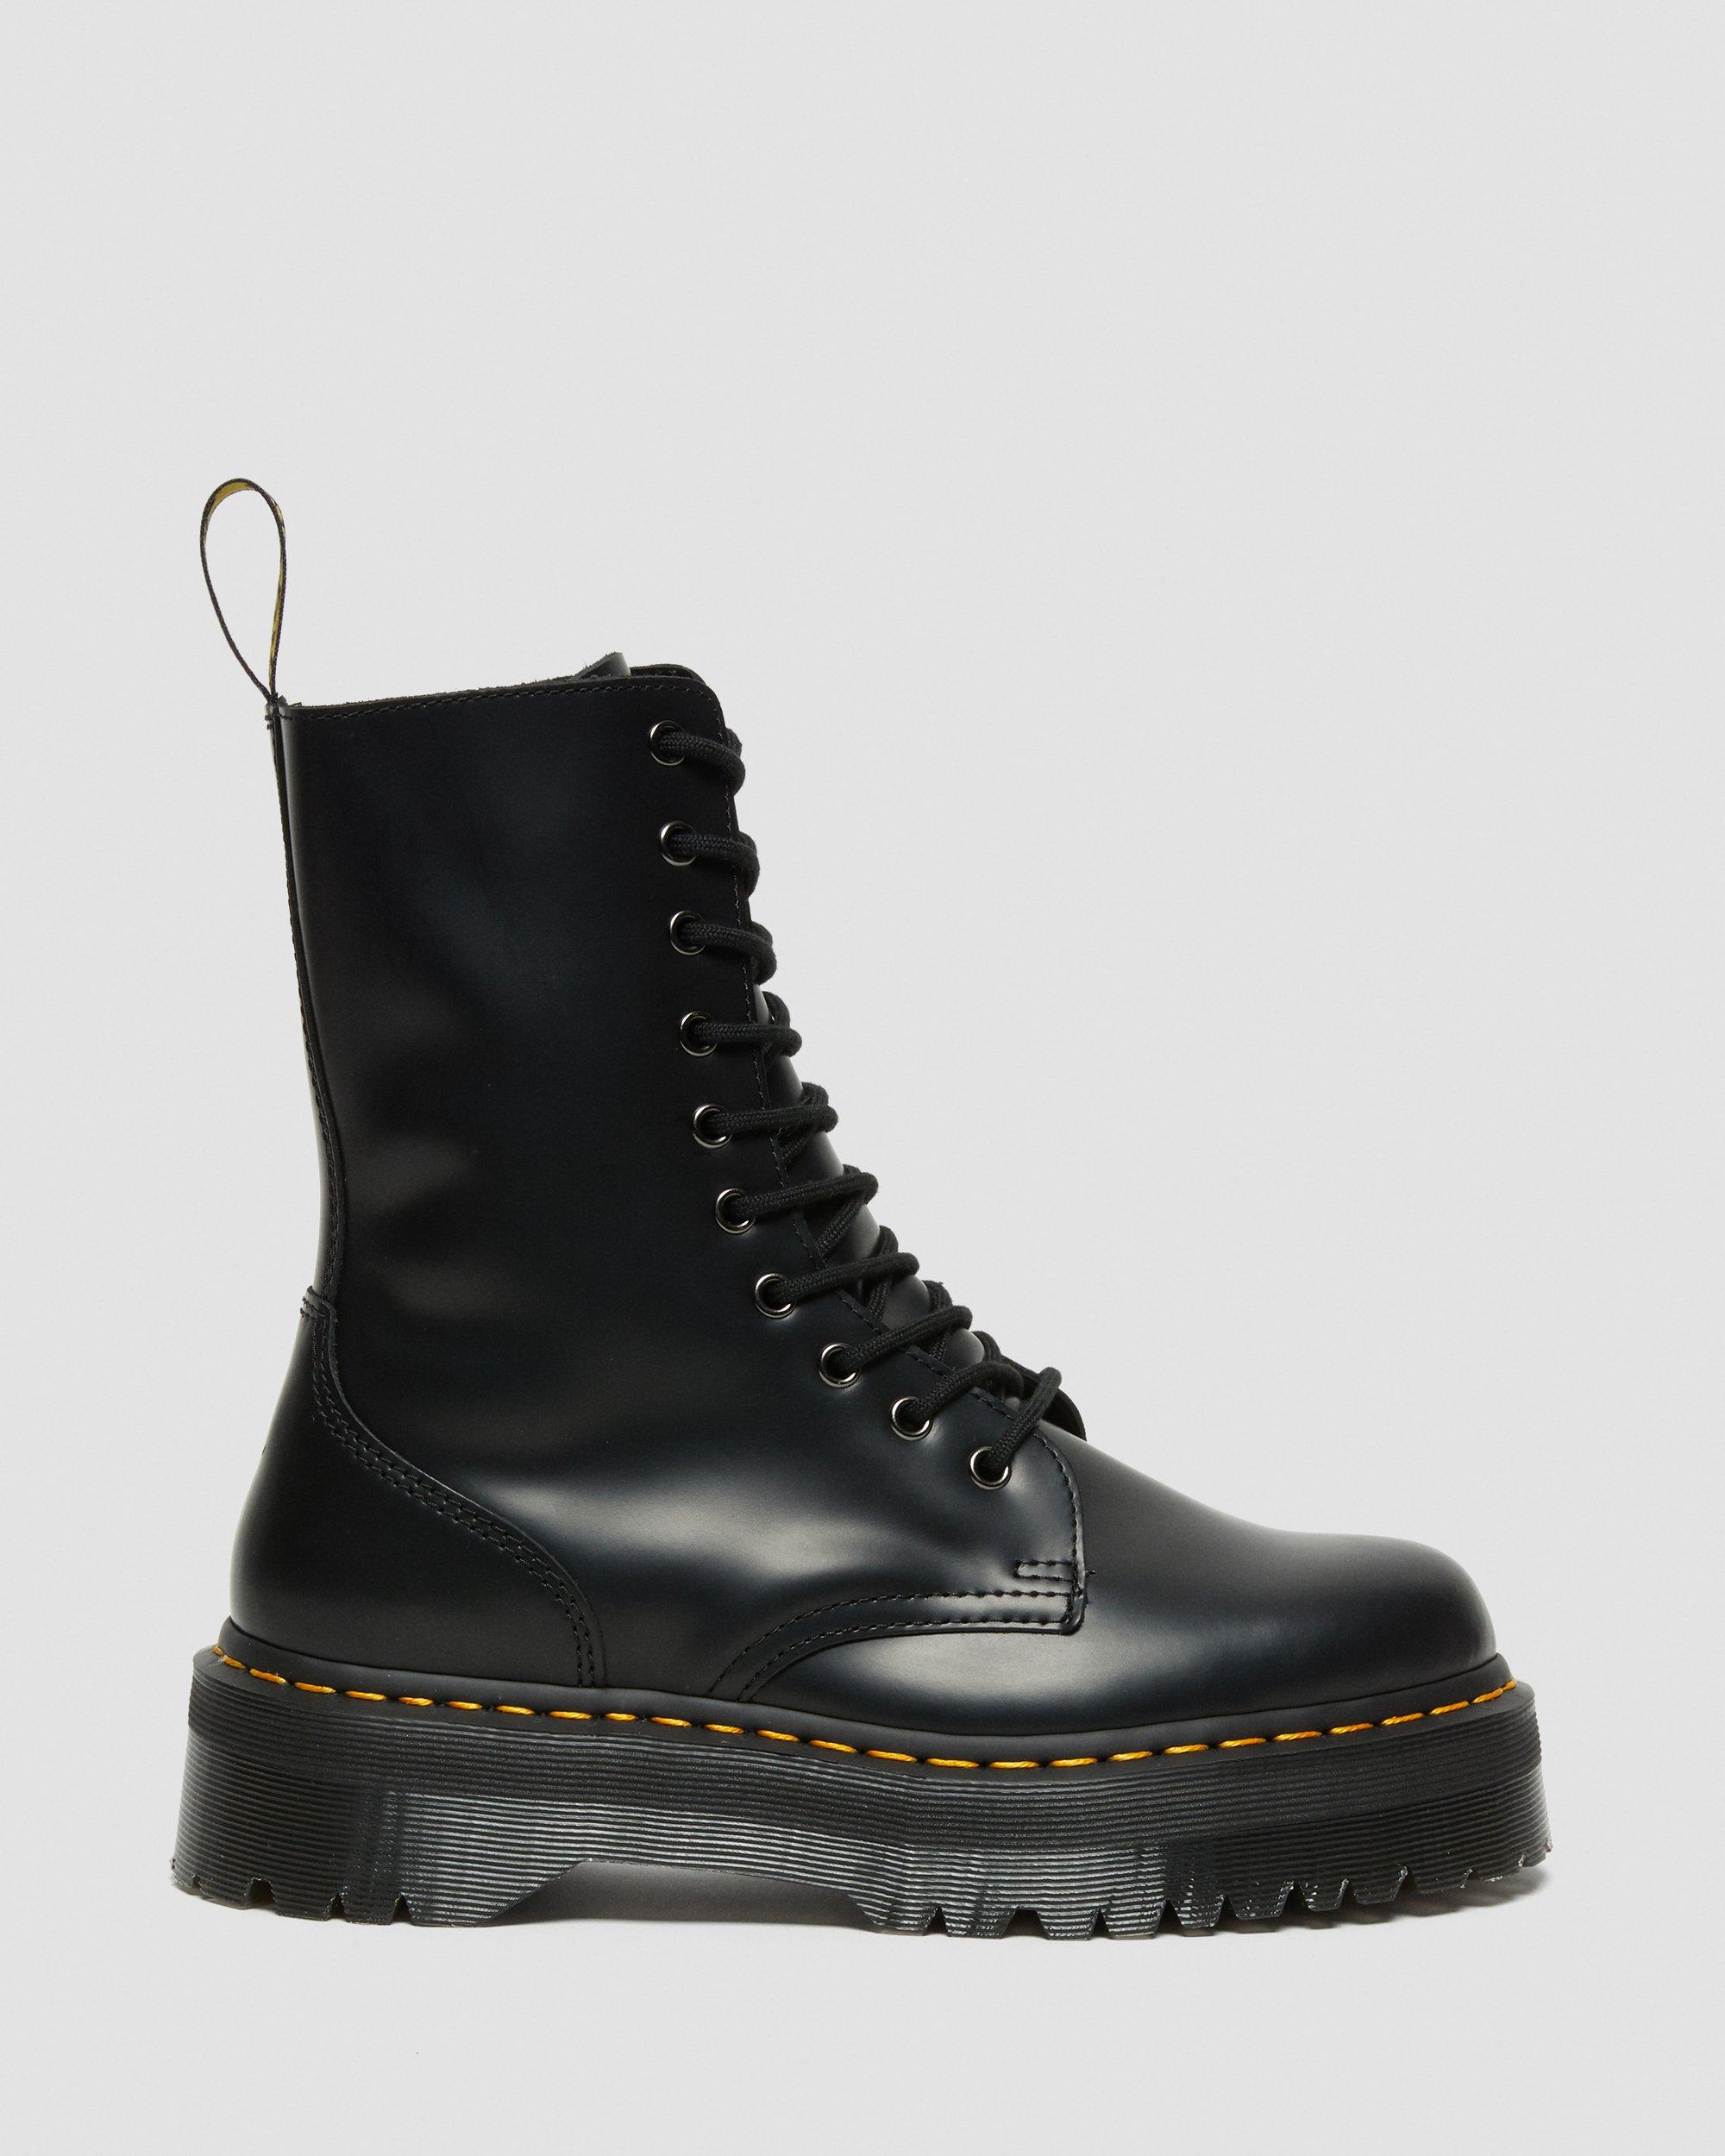 Jadon Hi Boot Smooth Leather Platforms in Black | Dr. Martens